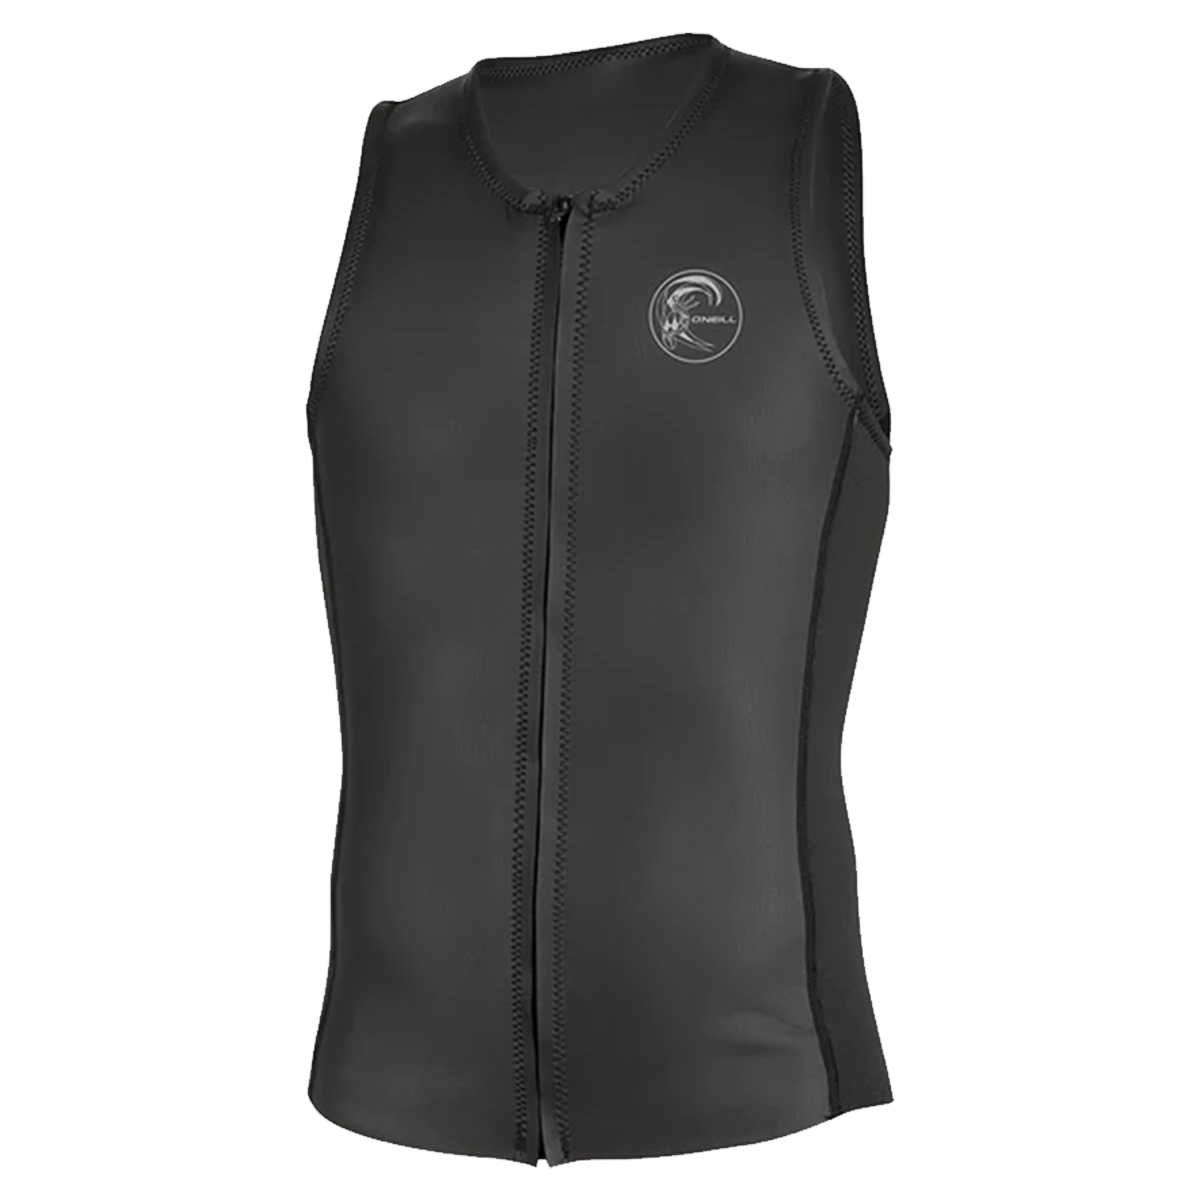 O'Neill Original 2/1mm Vest in Black - BoardCo